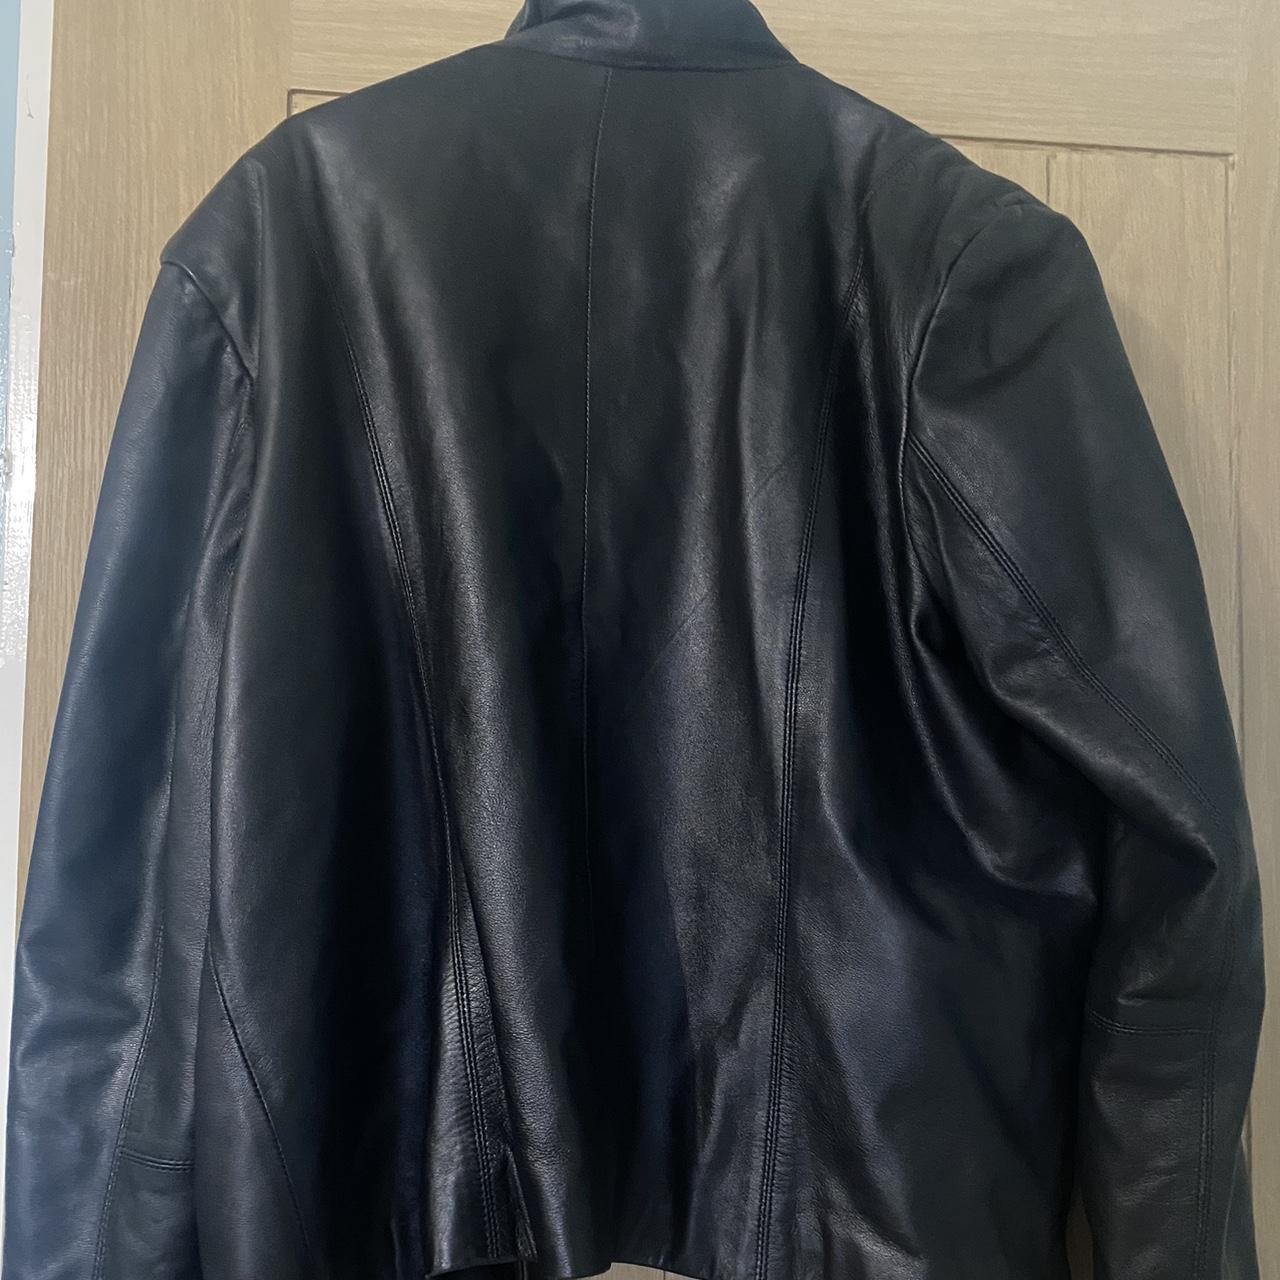 Real leather jacket - Depop